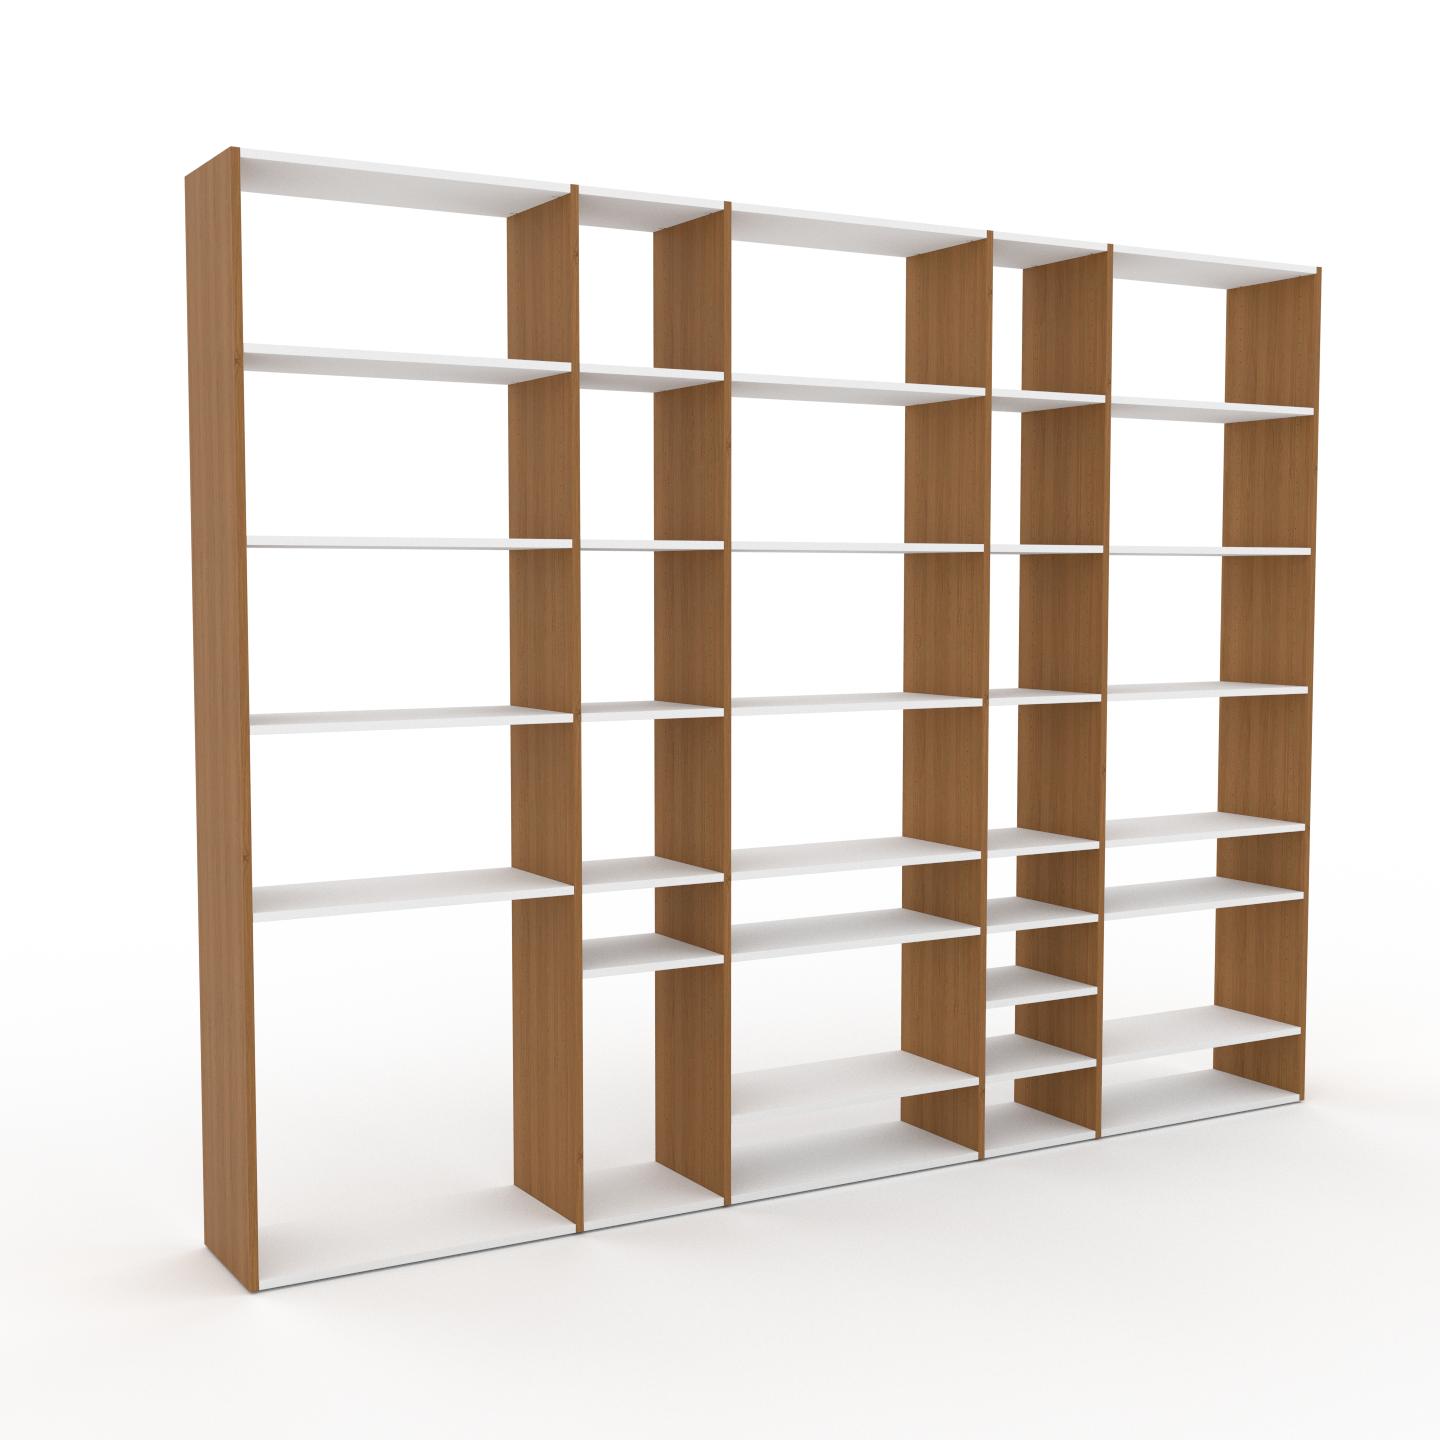 MYCS Bücherregal Eiche, Holz - Modernes Regal für Bücher: Hochwertige Qualität, einzigartiges Design - 303 x 233 x 35 cm, konfigurierbar